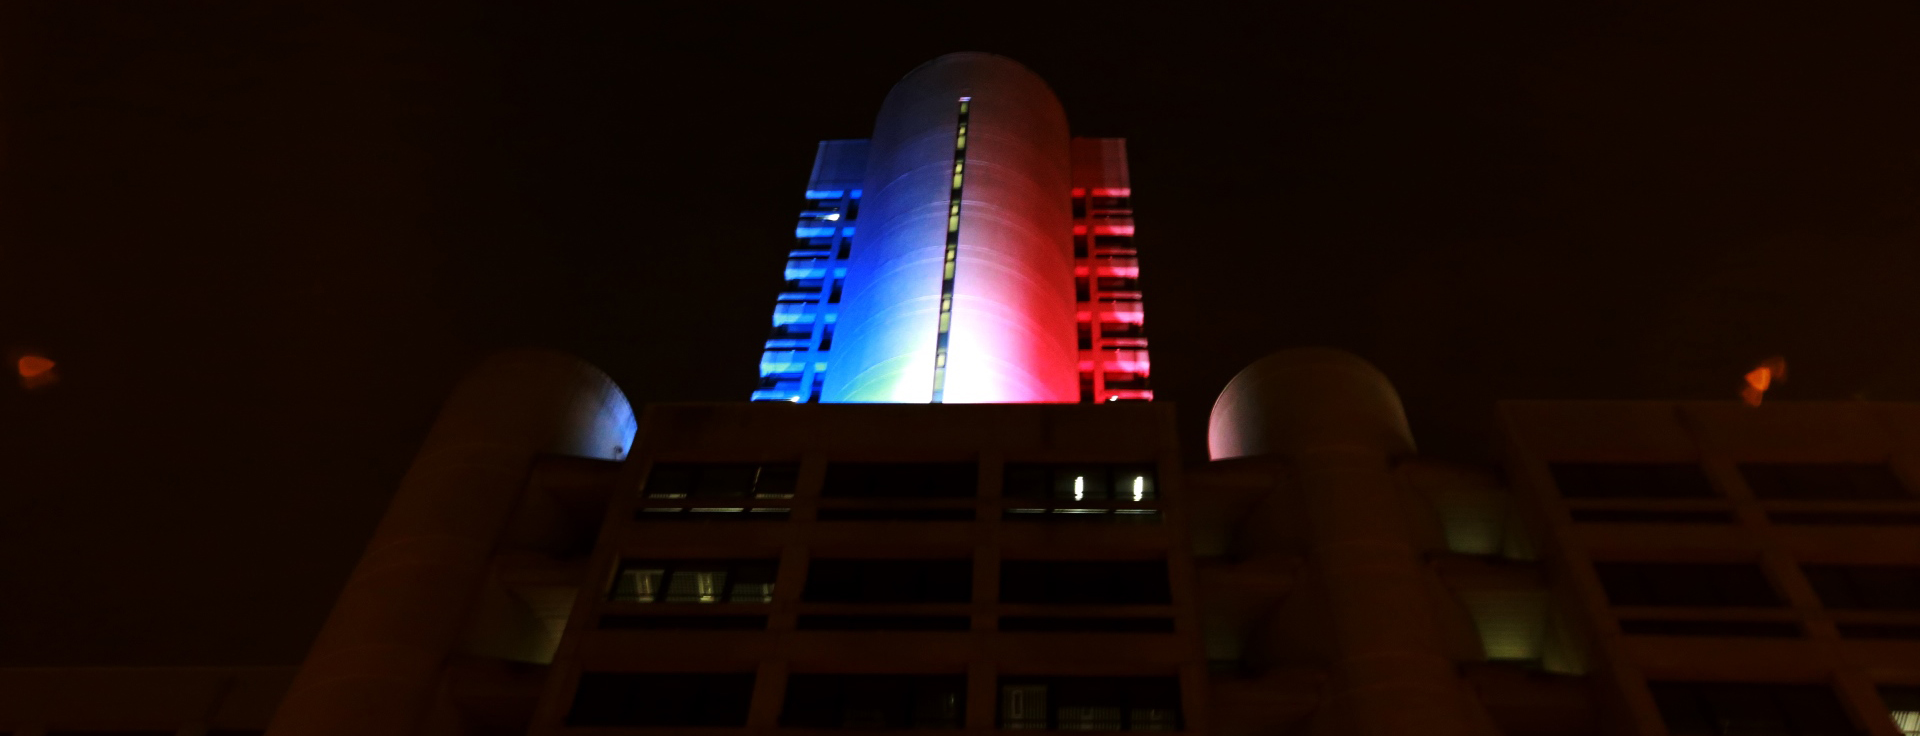 Torri Regione illuminate con colori Francia per vittime Parigi (13 novembre 2015) - Banner